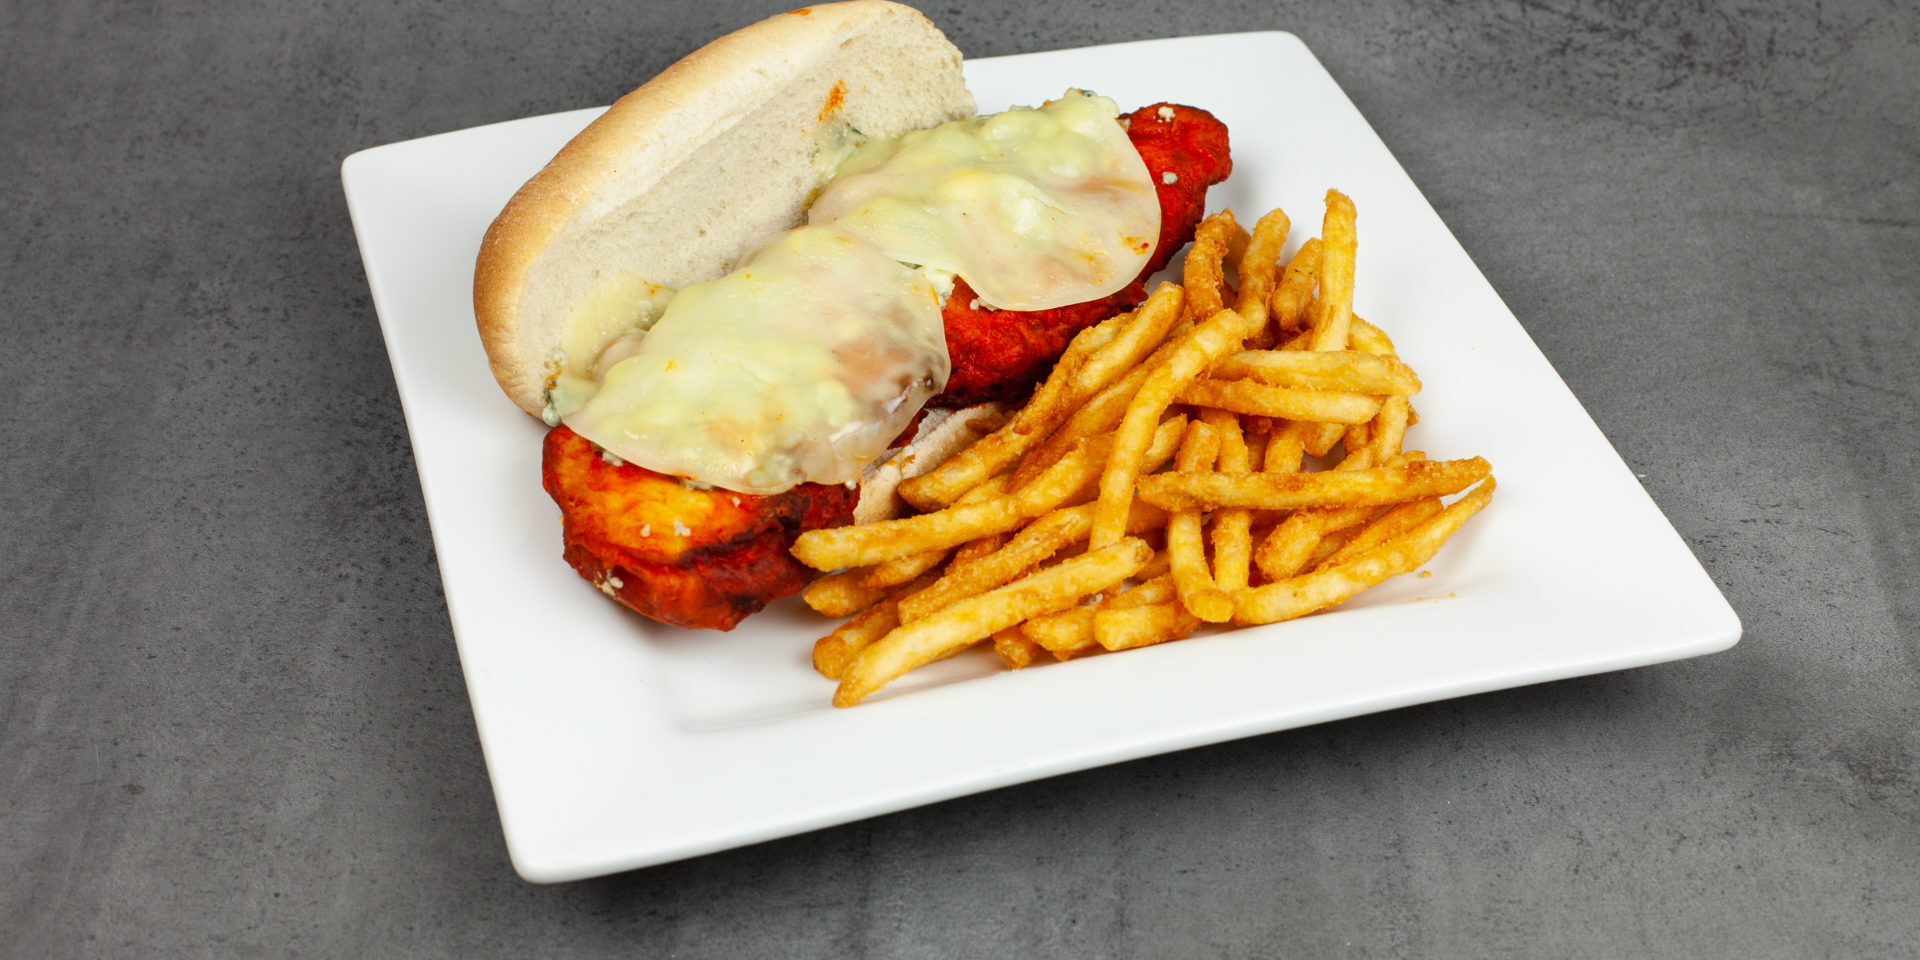 Buffalo Chicken Sandwich w/Fries